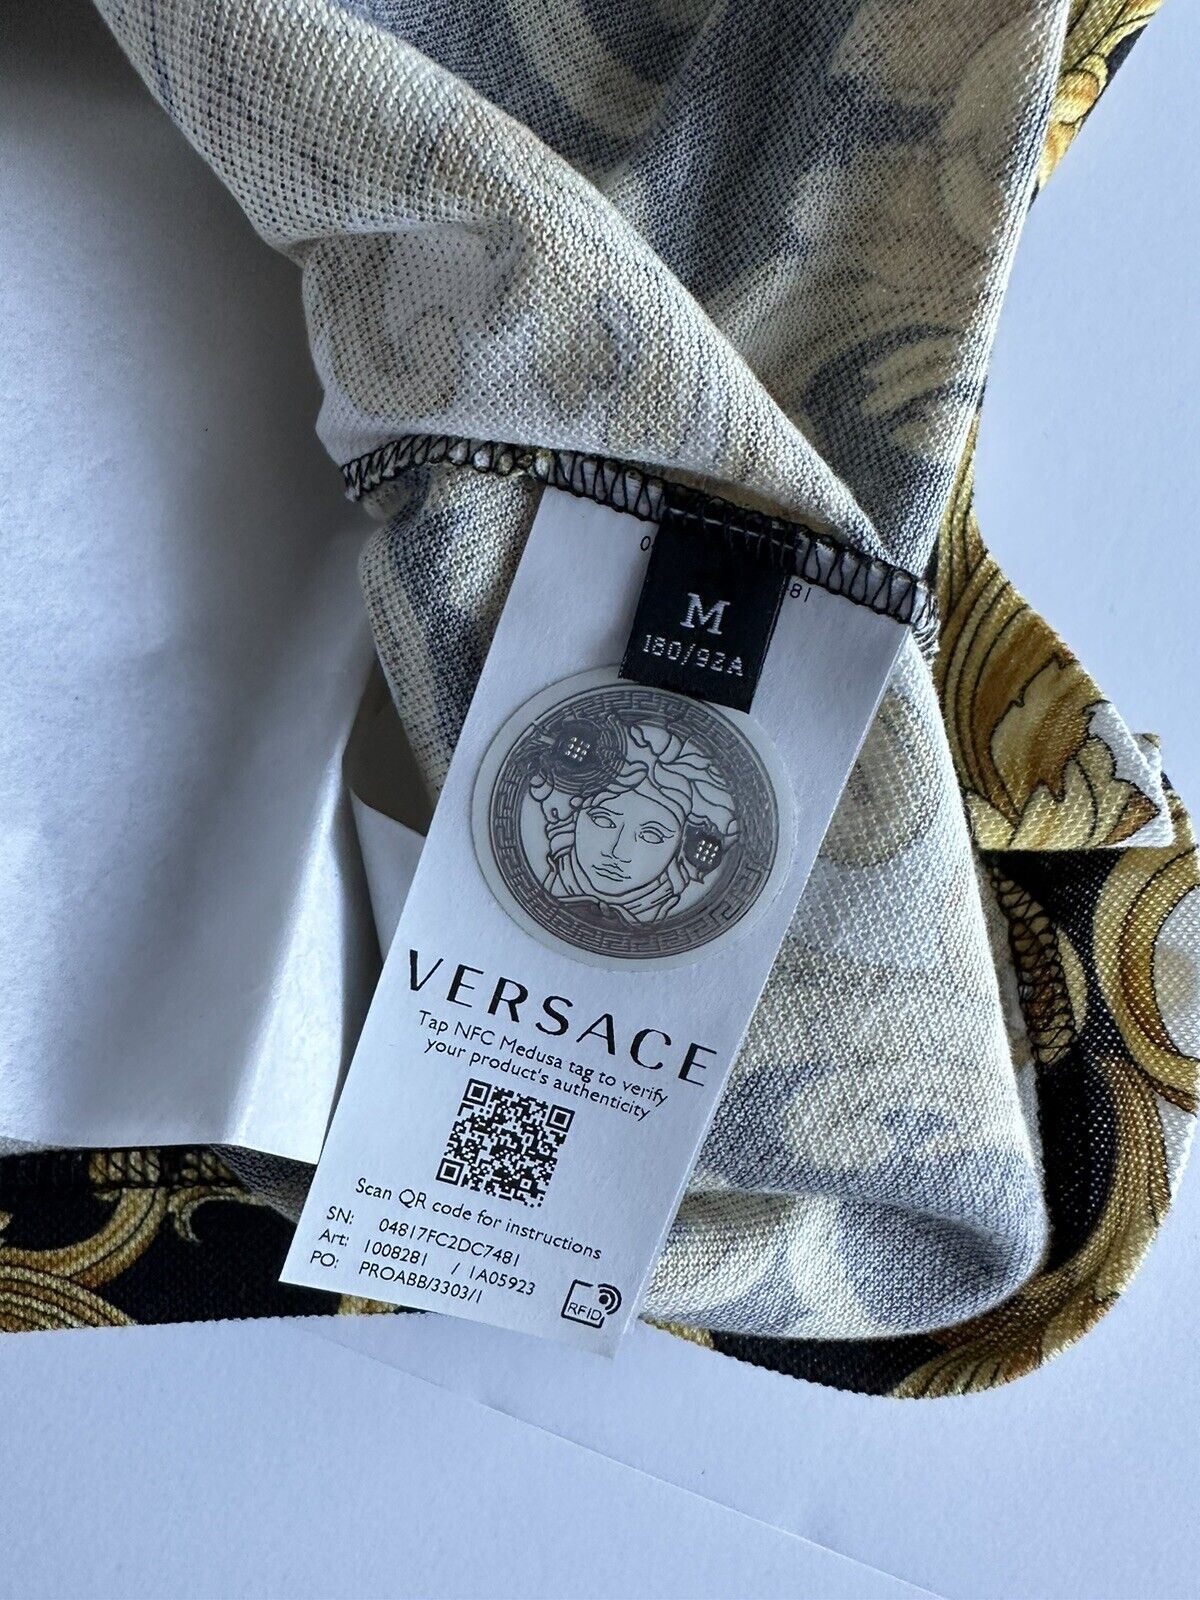 Рубашка поло Medusa Renaissance из ткани Versace Piquet, размер NWT 600 долларов США, средняя 1008281